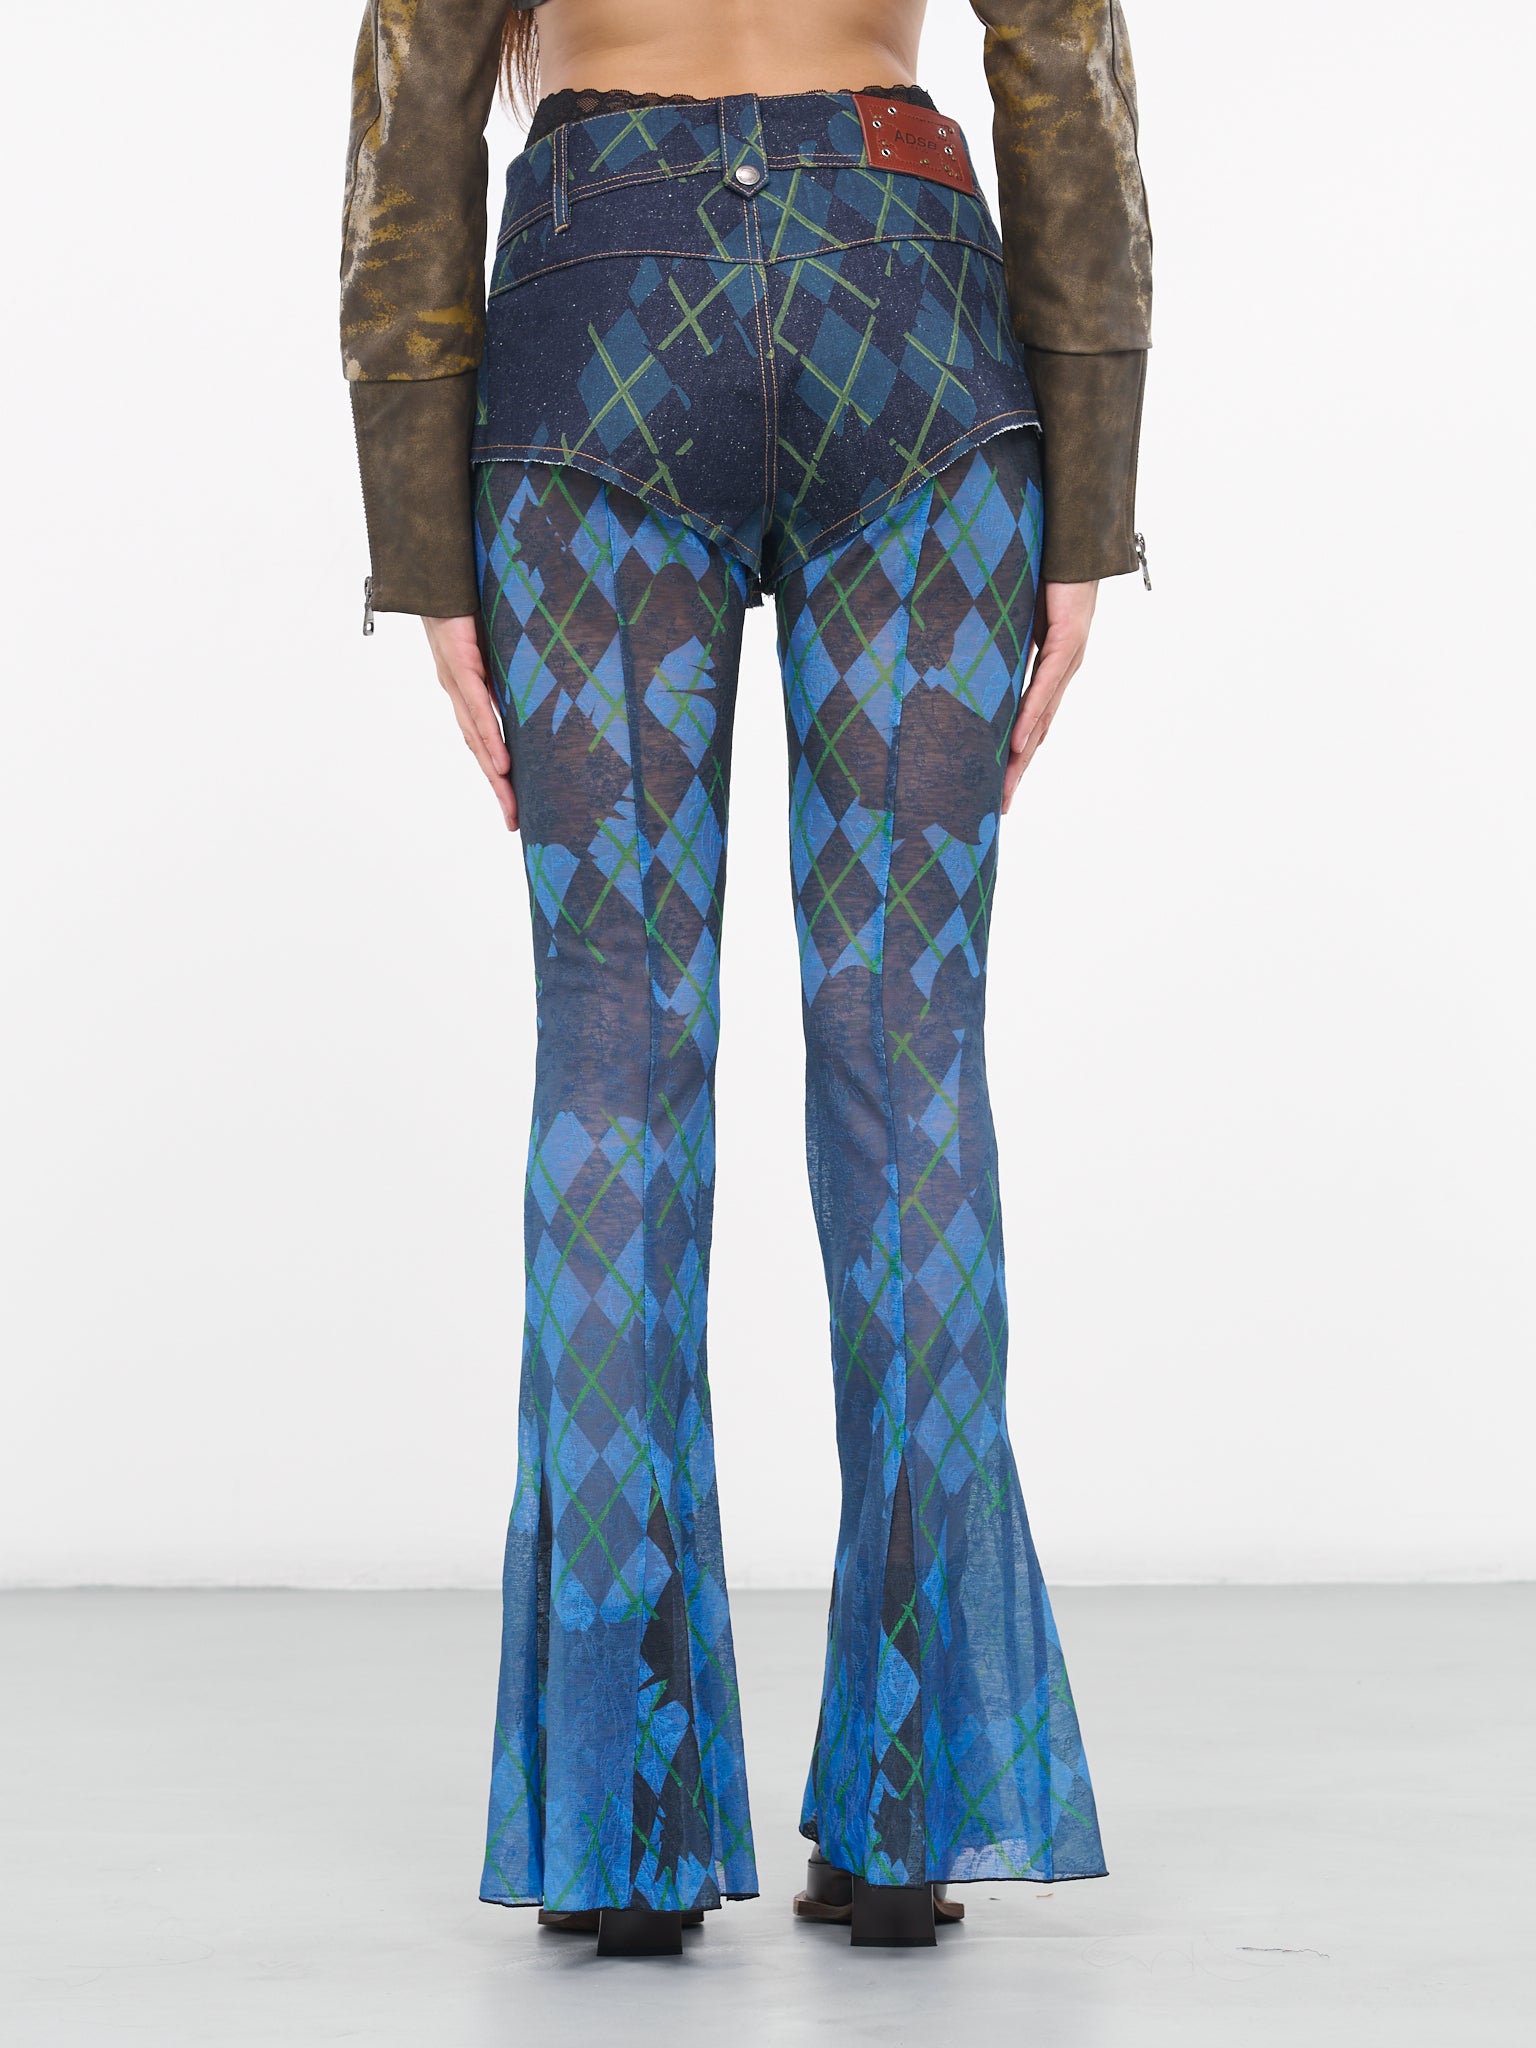 Plaid Shorts Trousers (APA670W-BLUE)